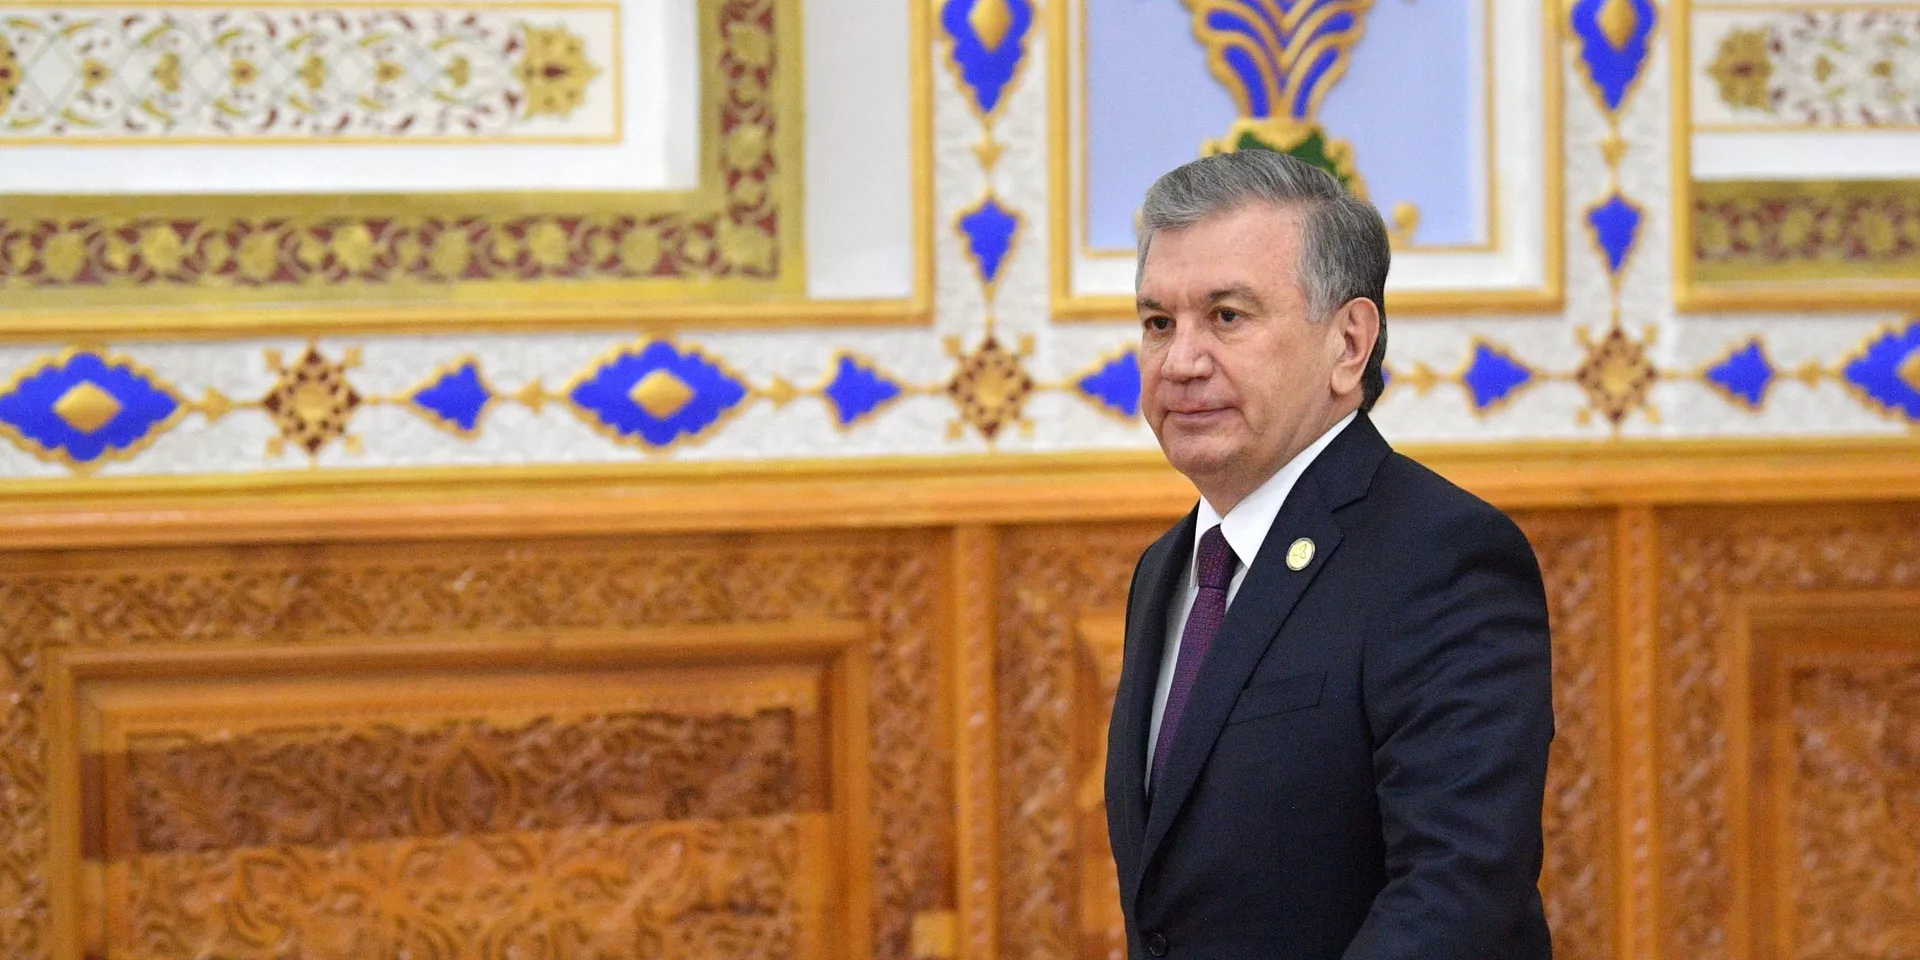 Узбекистан: президент сделал уступку по конституции, чтобы разрядить напряженность в Каракалпакстане